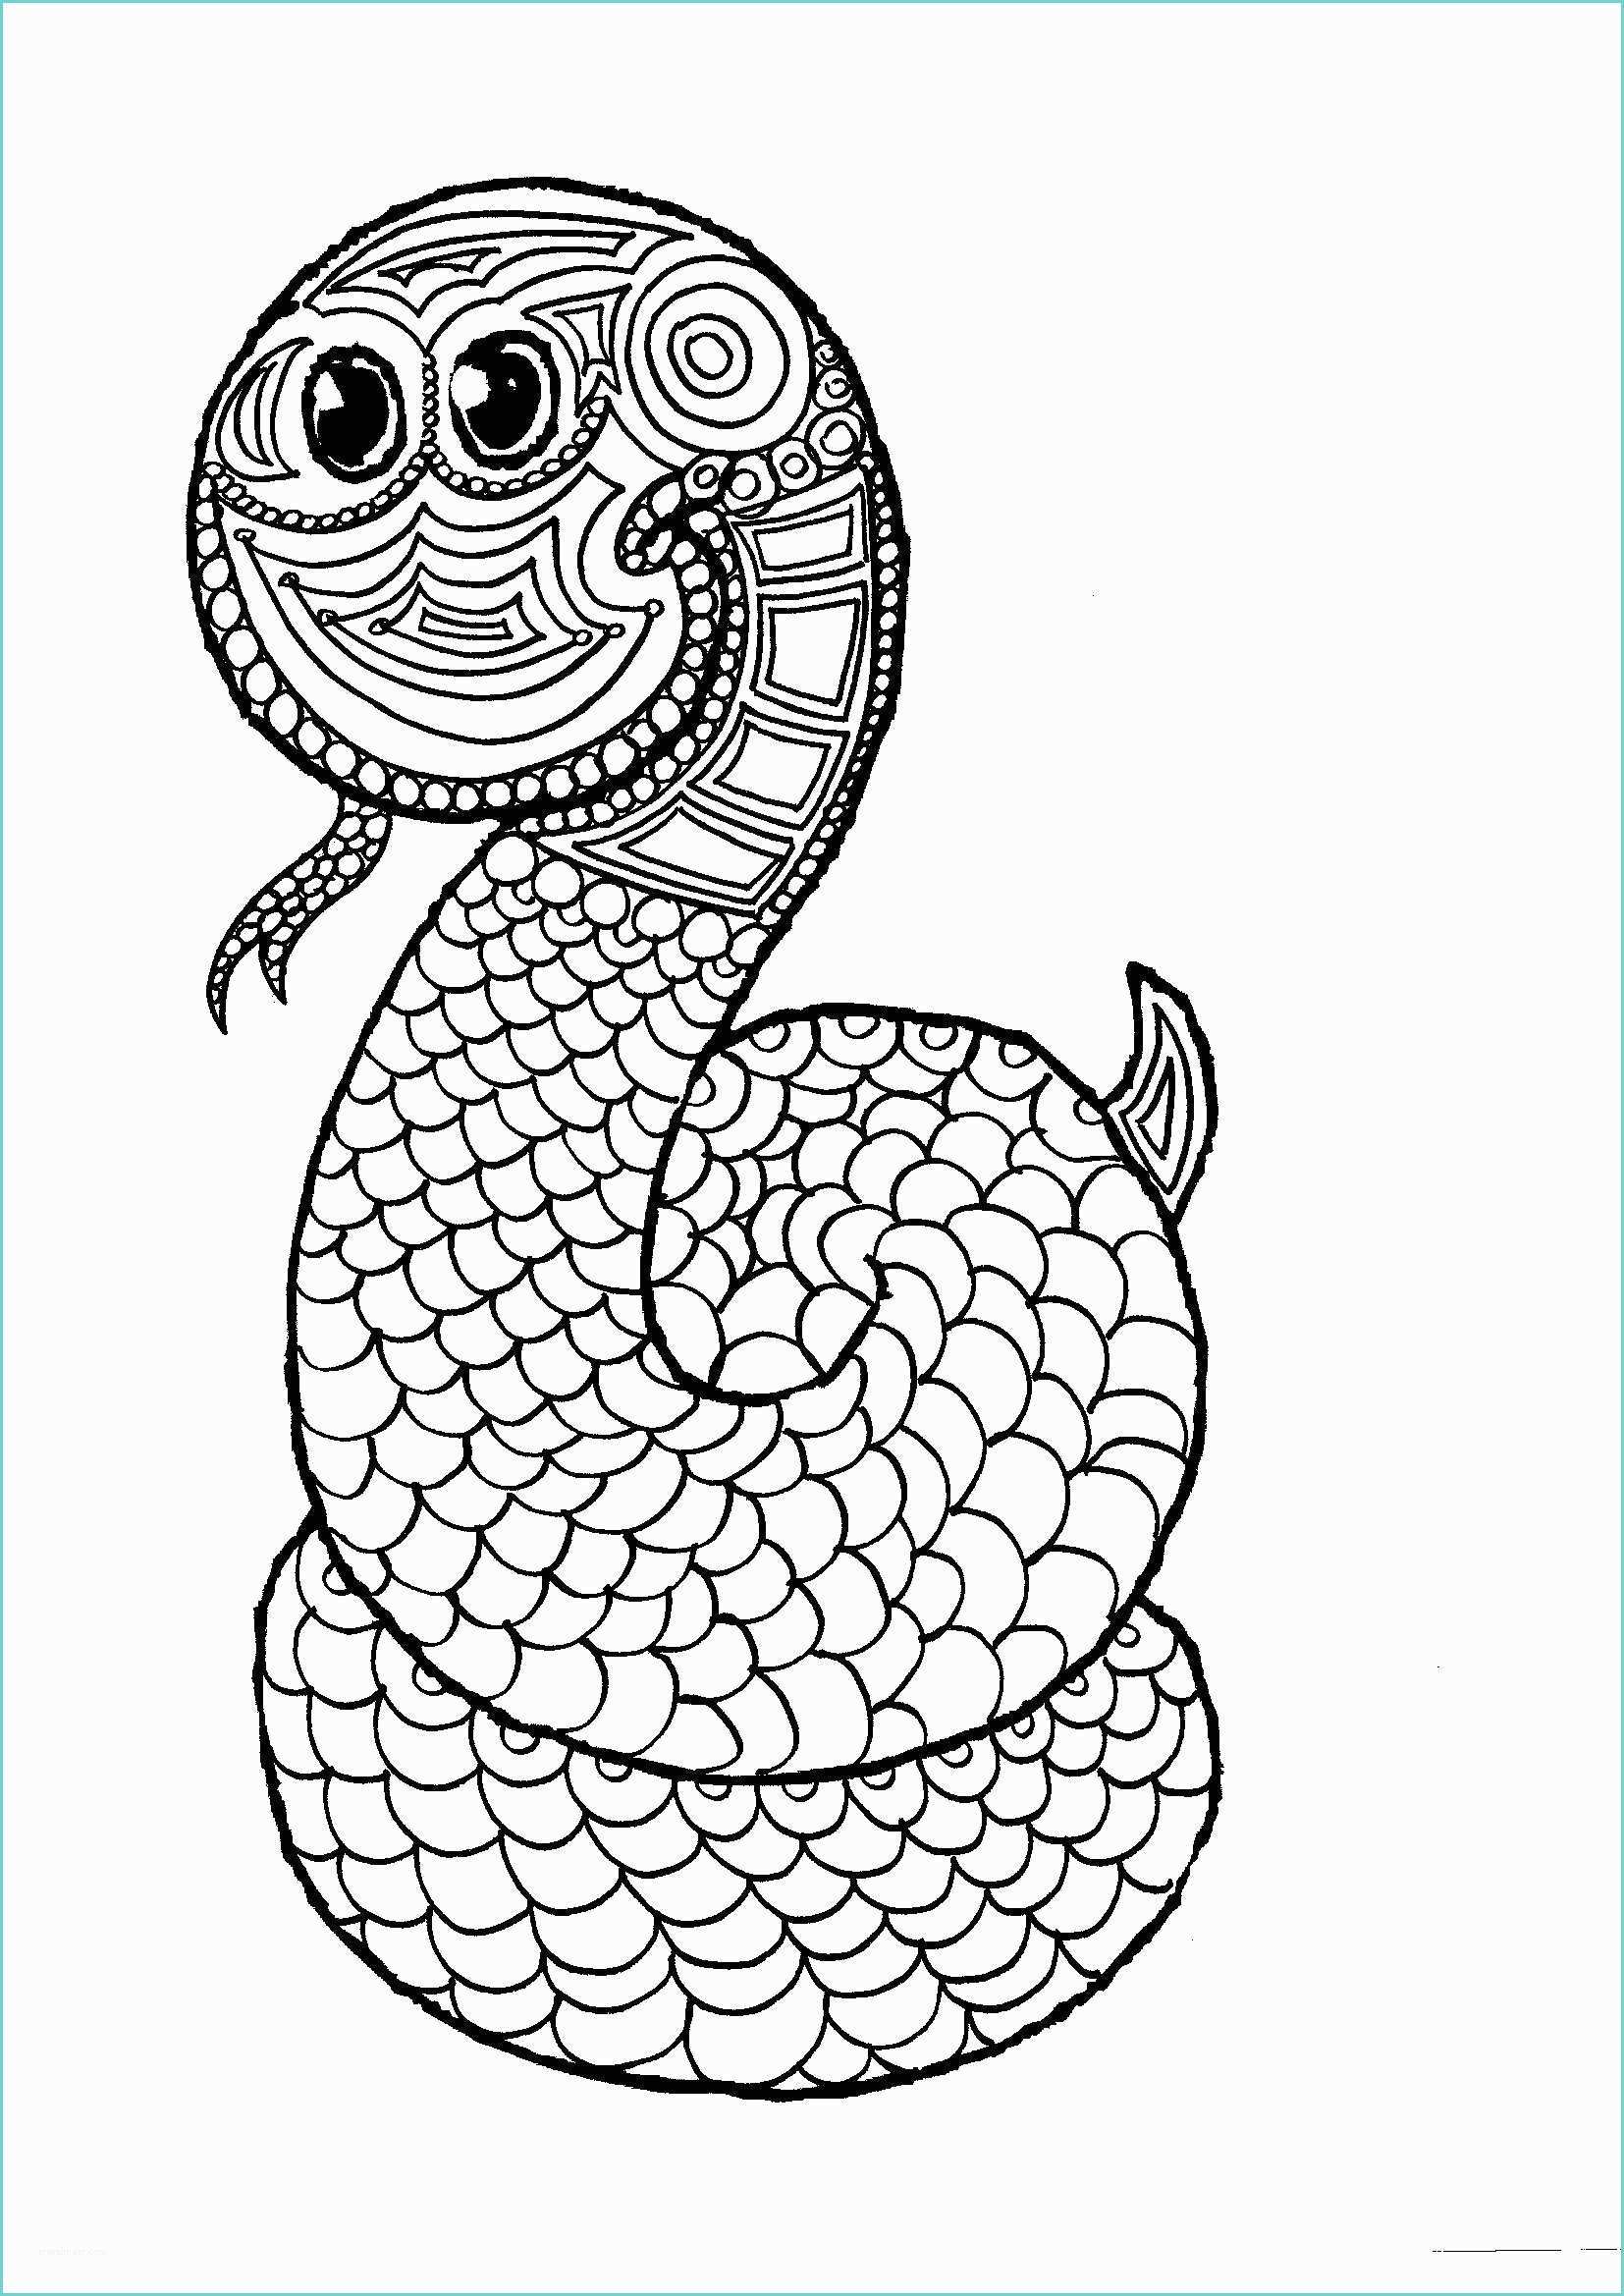 Mandala Da Colorare Di Animali Mandala Per Bambini Da Colorare Il Serpente